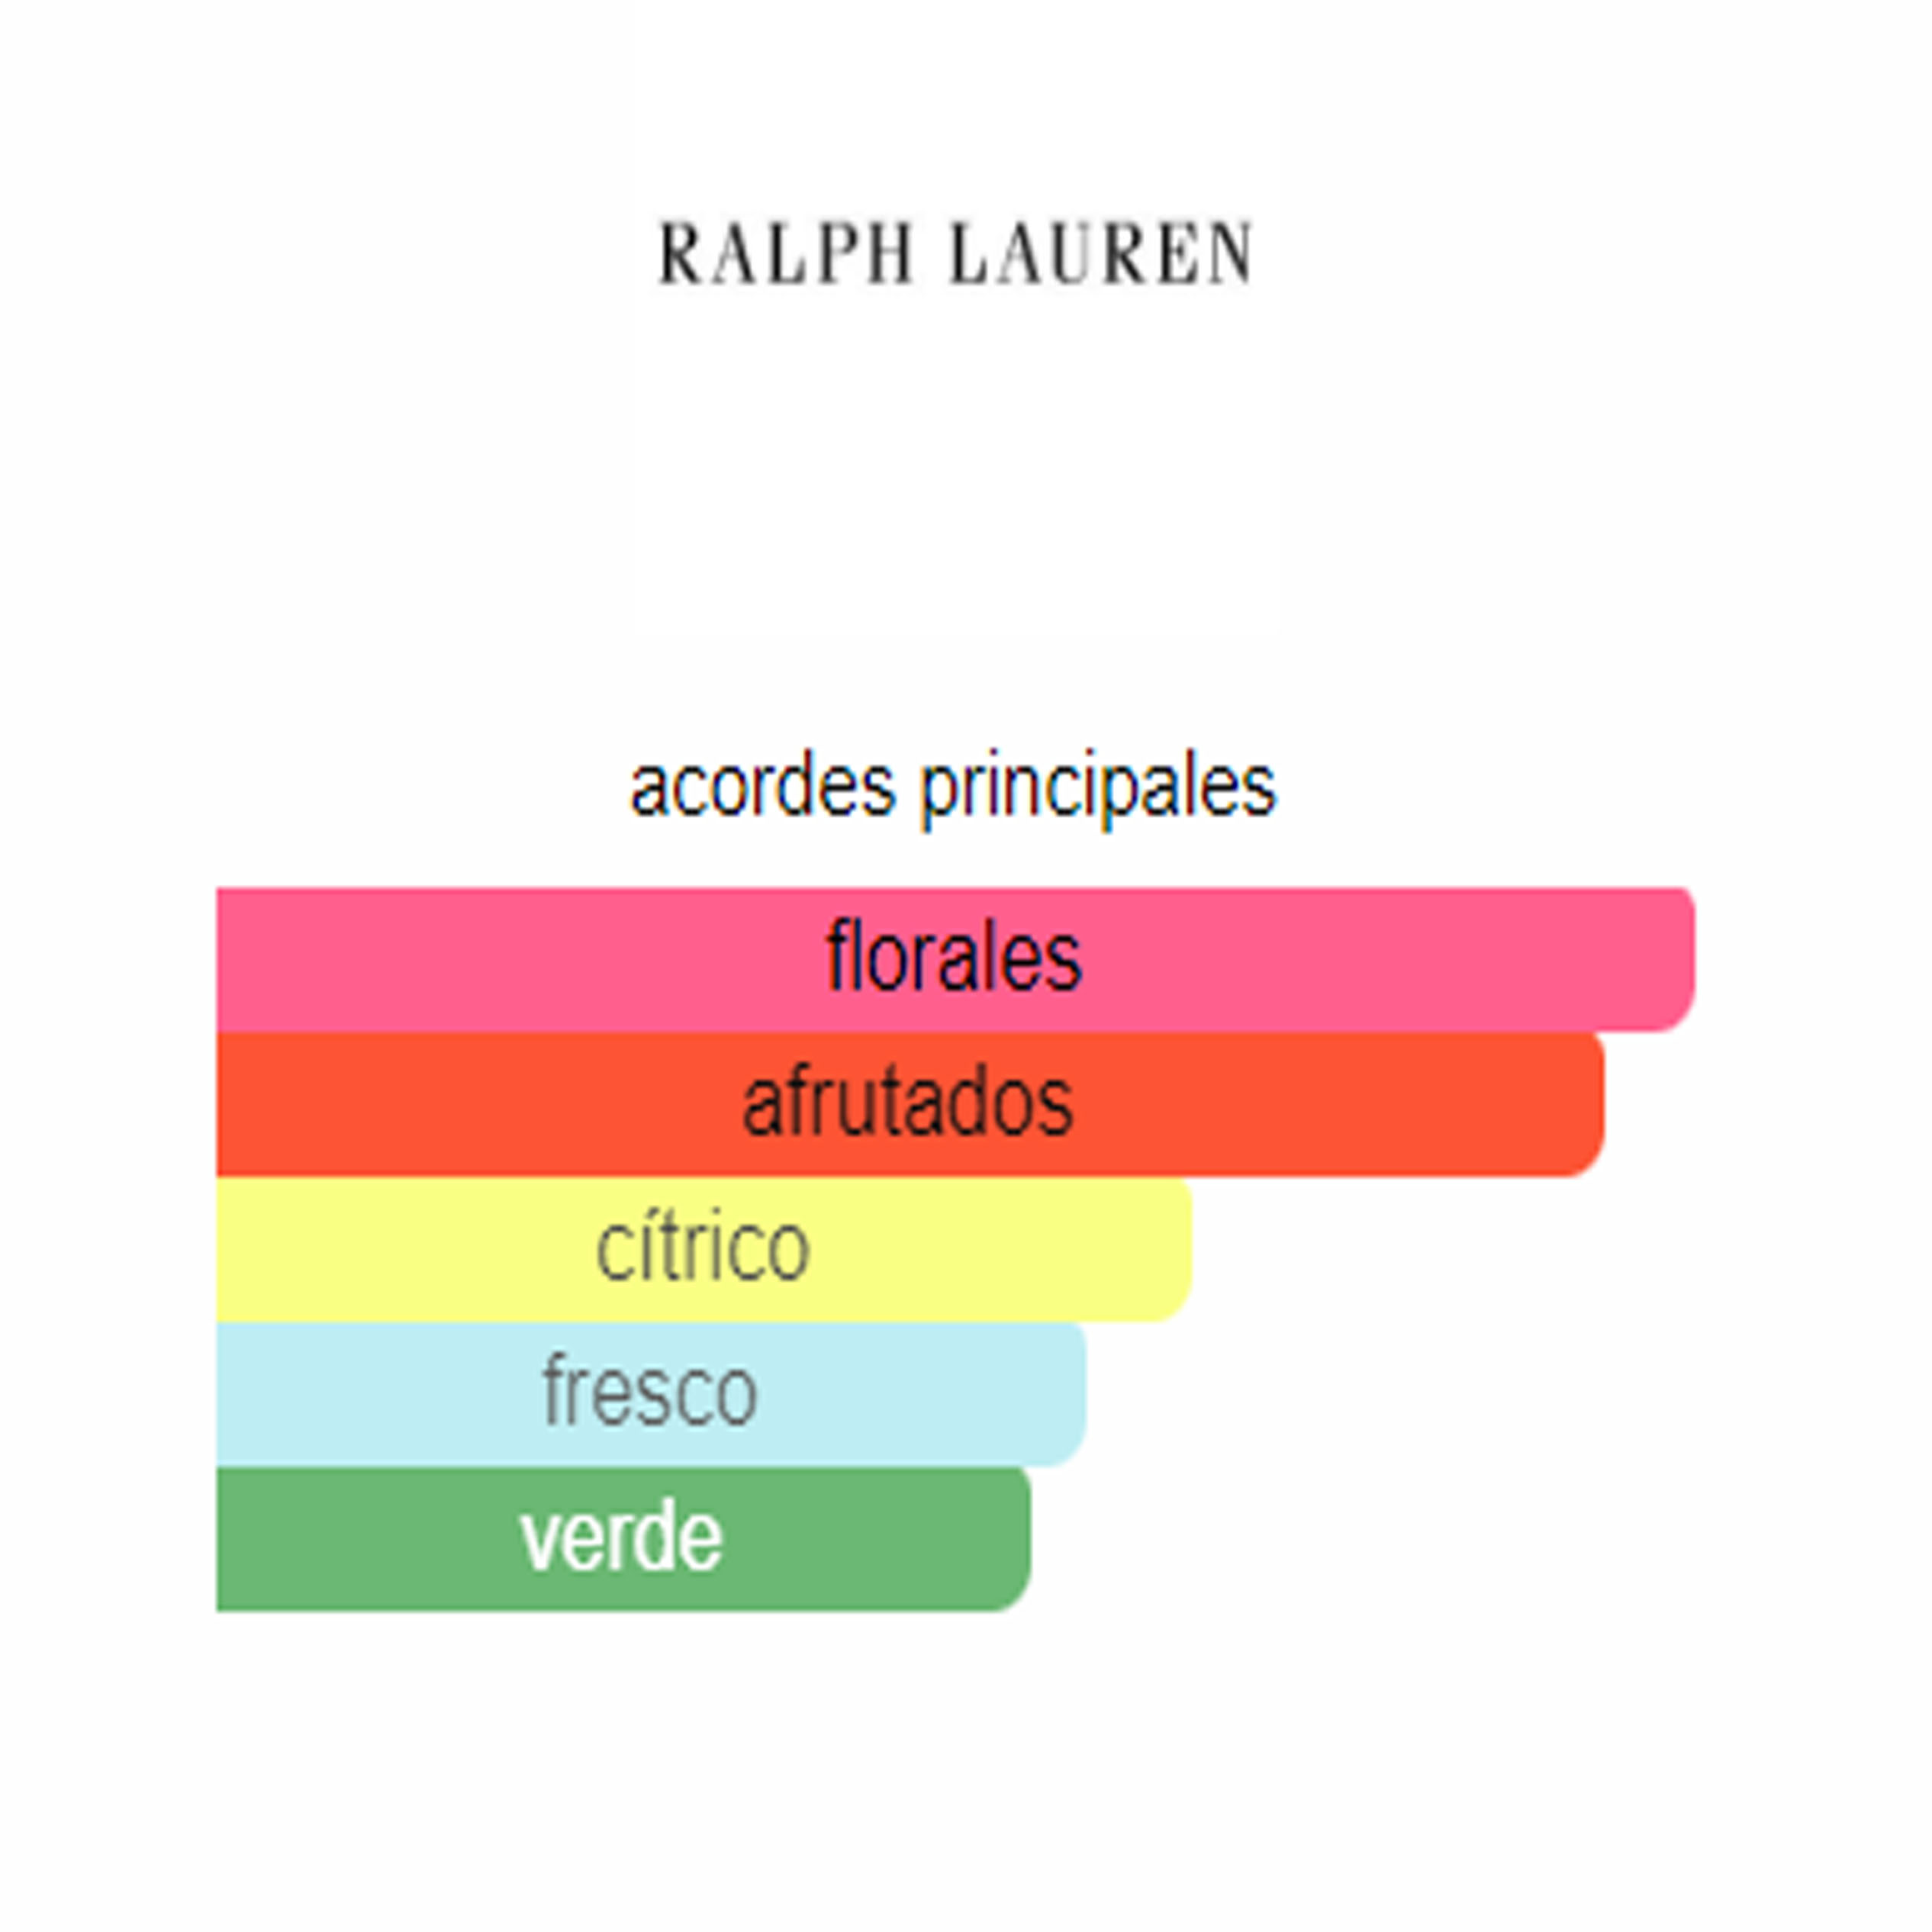 Ralph Ralph Lauren (Replica Con Fragancia Importada)- Mujer